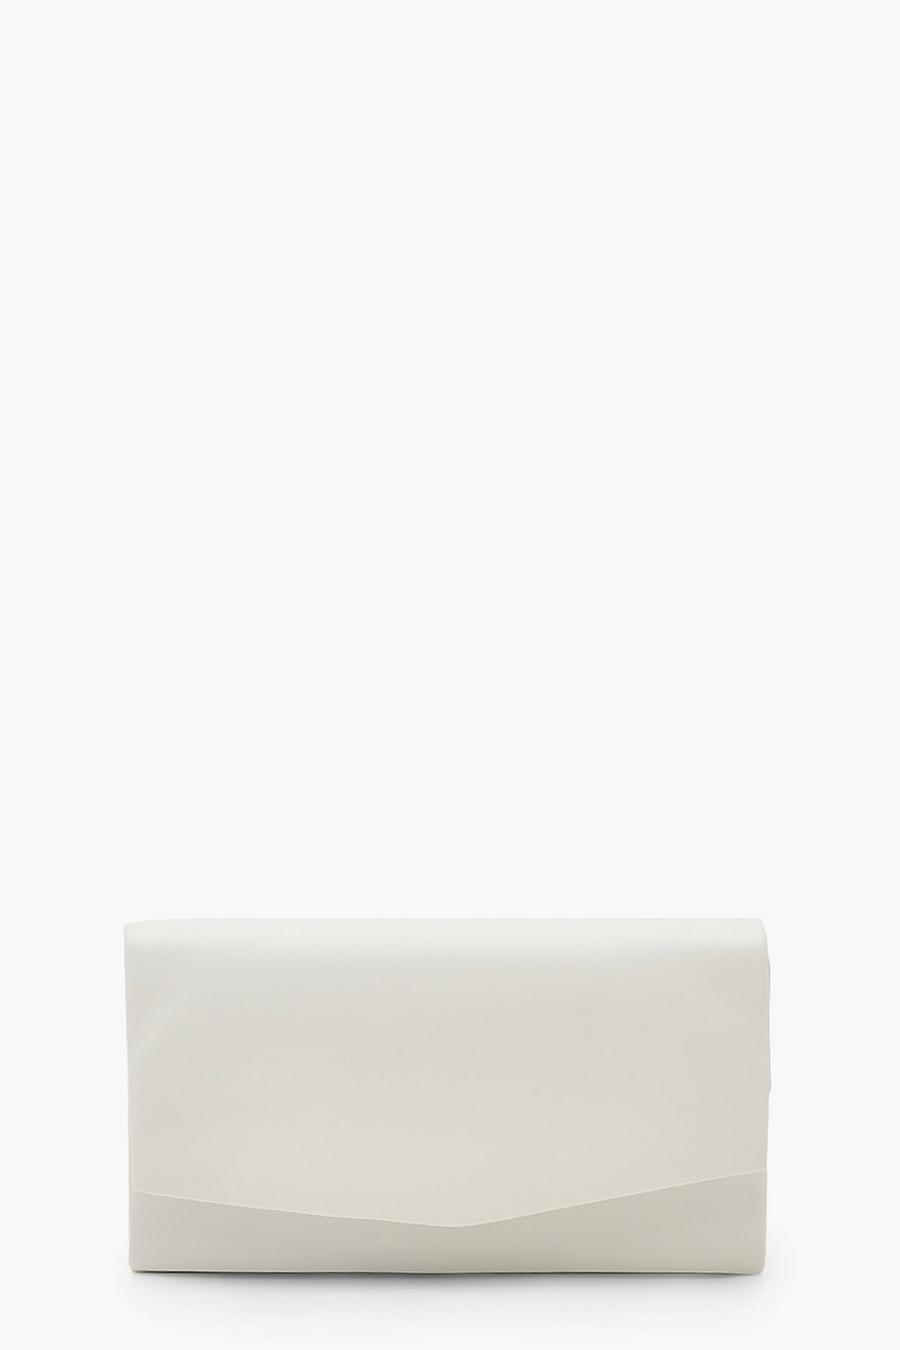 Bolso de cuero sintético suave texturizado de mano con cadena, White blanco